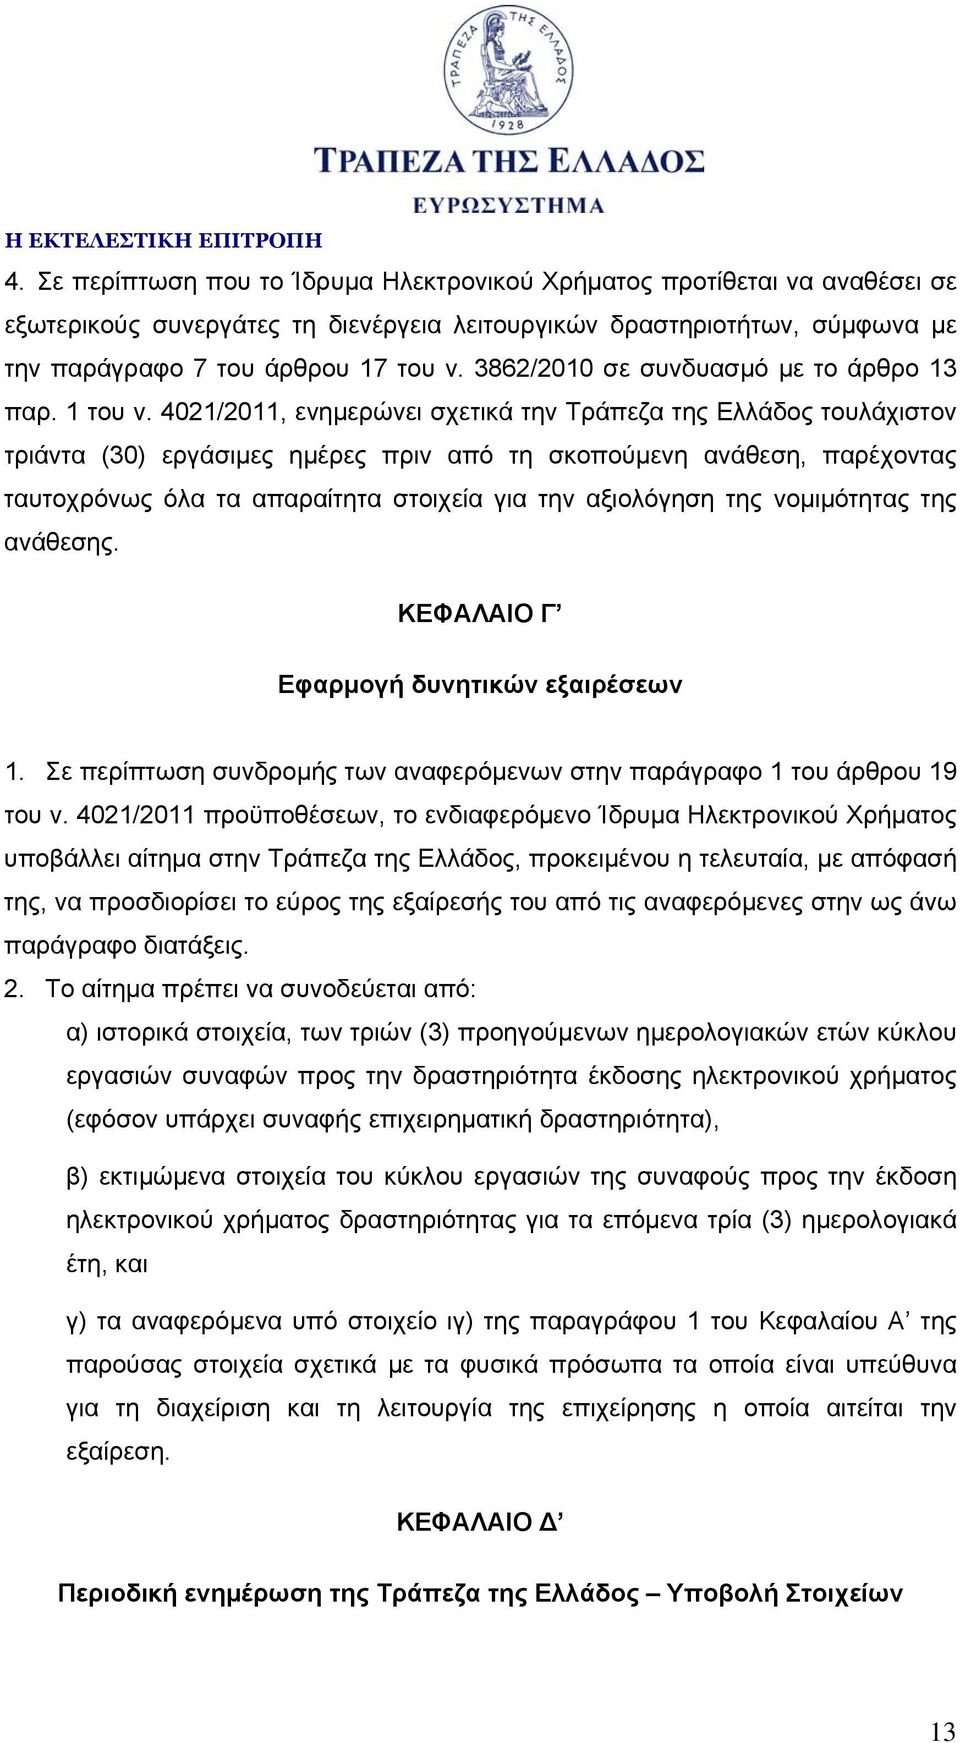 4021/2011, ενημερώνει σχετικά την Τράπεζα της Ελλάδος τουλάχιστον τριάντα (30) εργάσιμες ημέρες πριν από τη σκοπούμενη ανάθεση, παρέχοντας ταυτοχρόνως όλα τα απαραίτητα στοιχεία για την αξιολόγηση